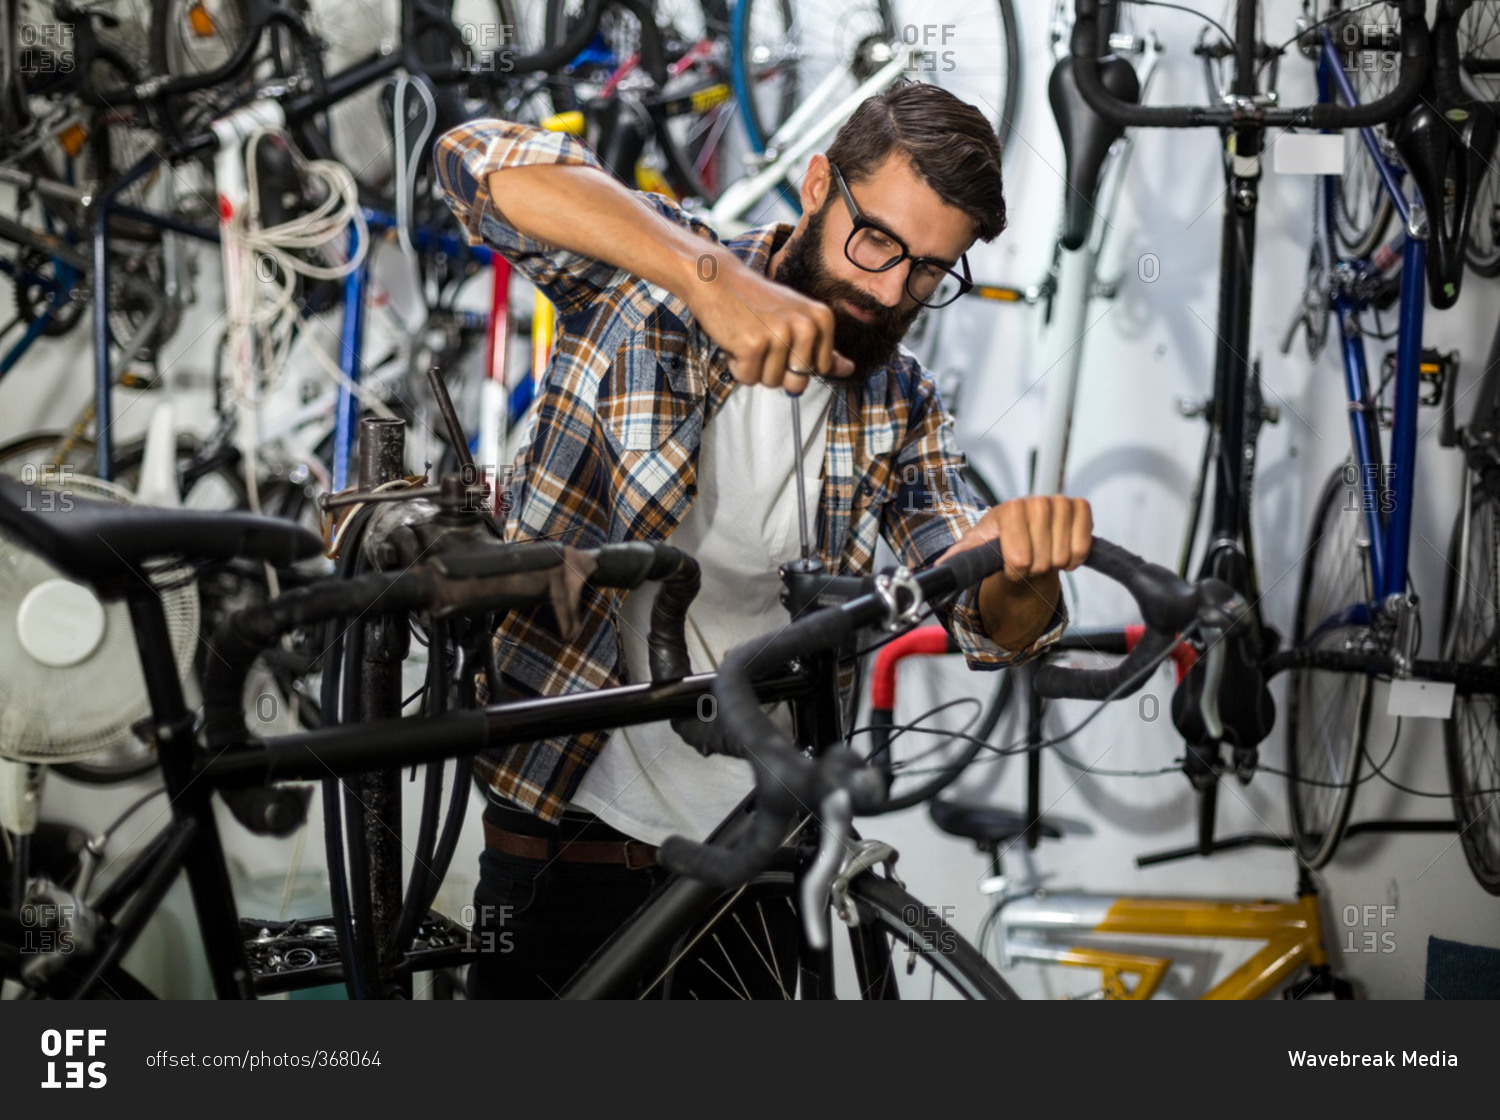 Bike mechanic checking at bicycle in bike repair shop